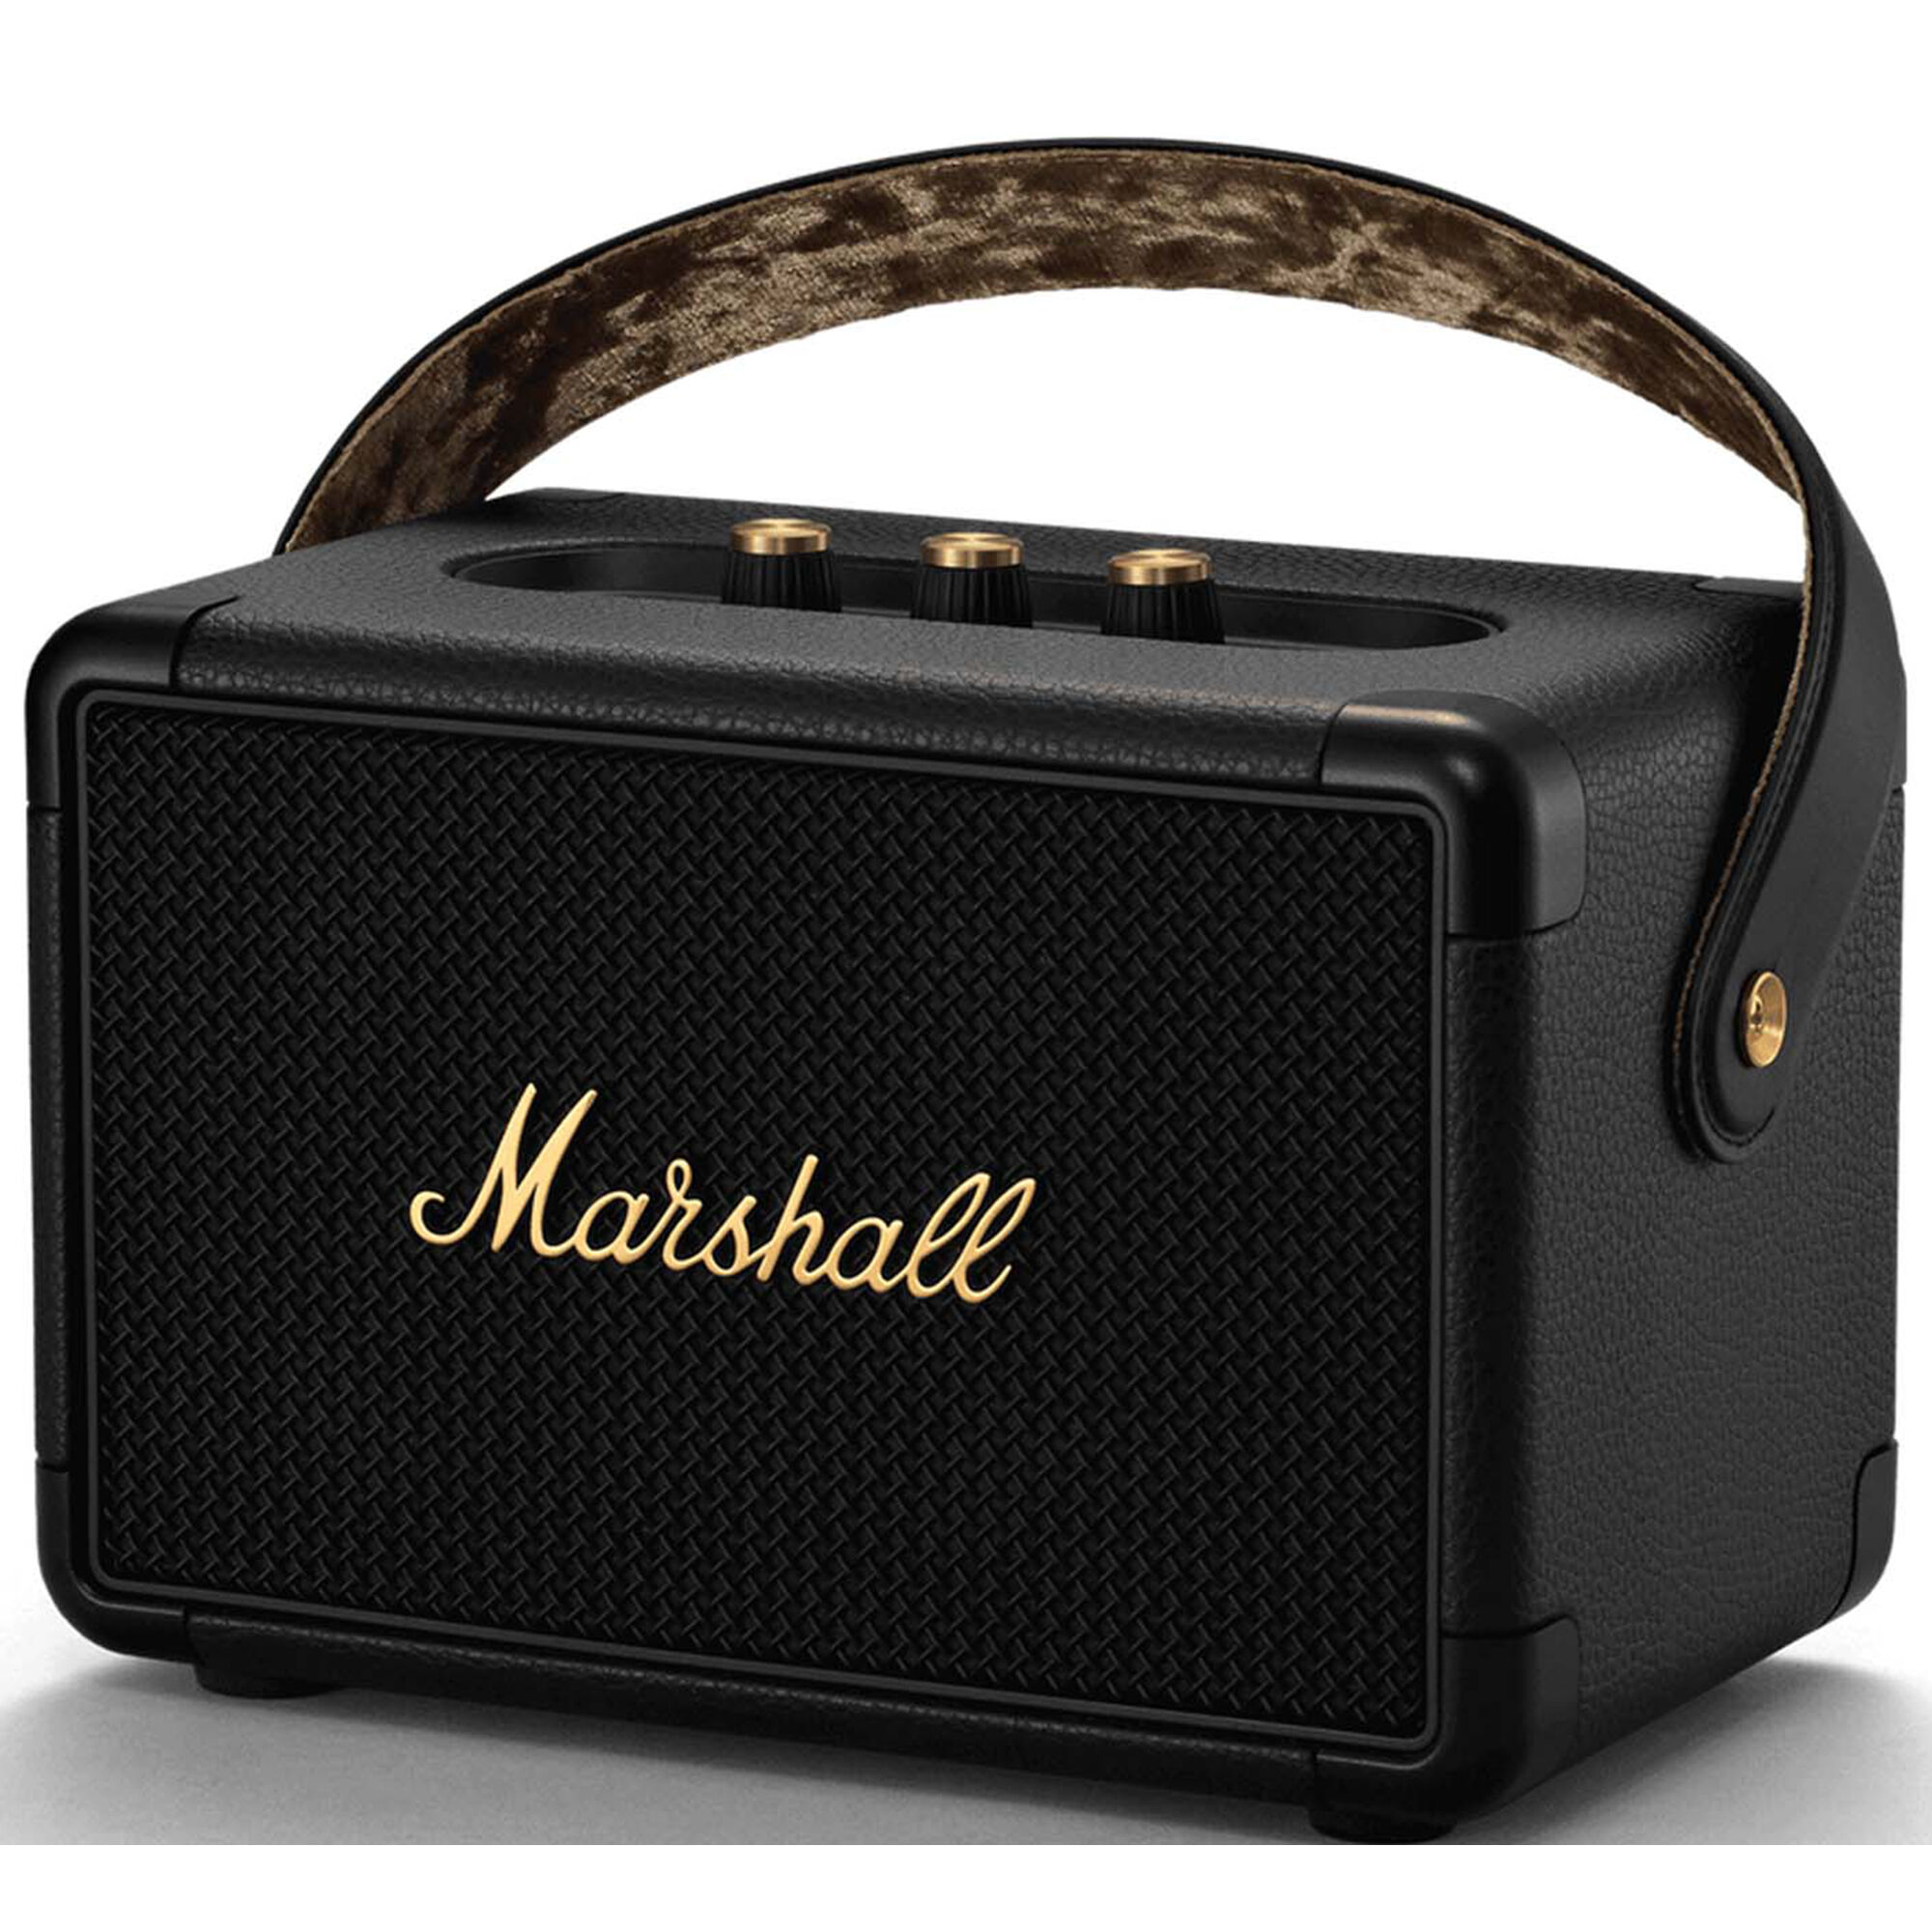 Marshall Kilburn II Bluetooth Speaker - Black | P.C. Richard & Son